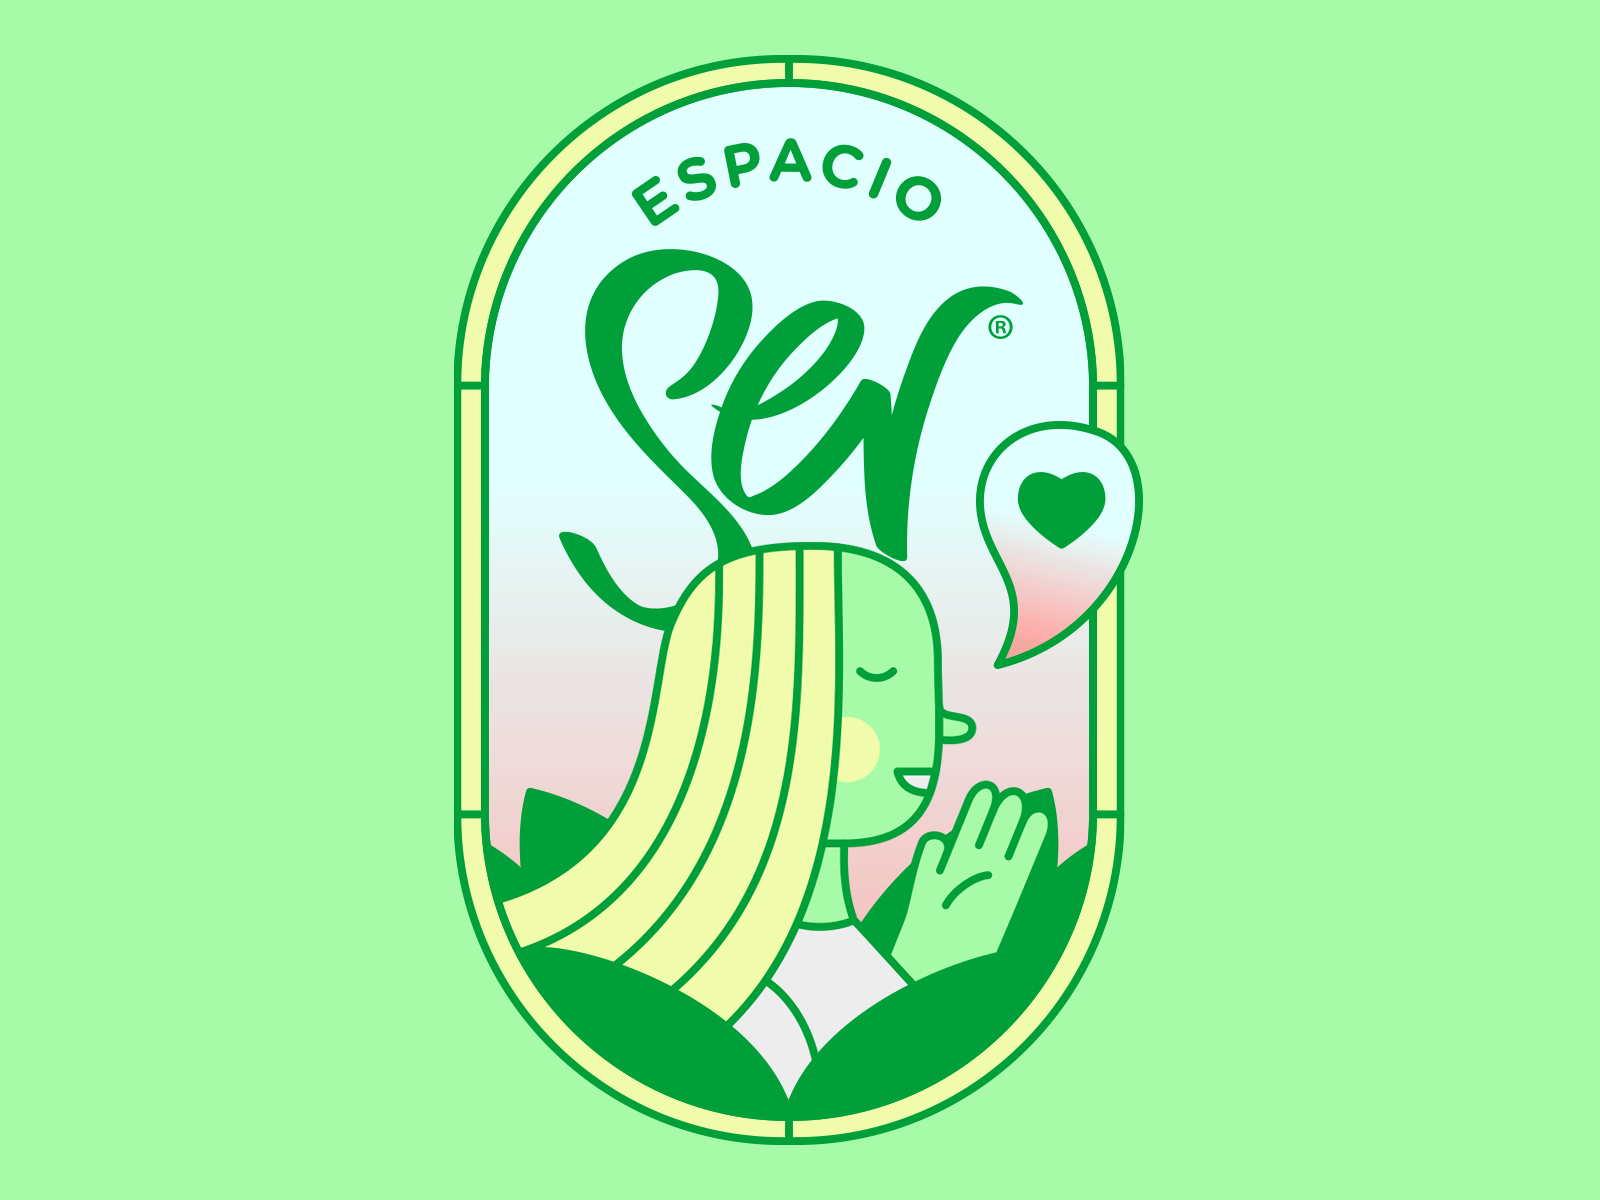 Espacio Ser blonde branding character illustration illustrations illustrator ilustración logo uruguay vector women